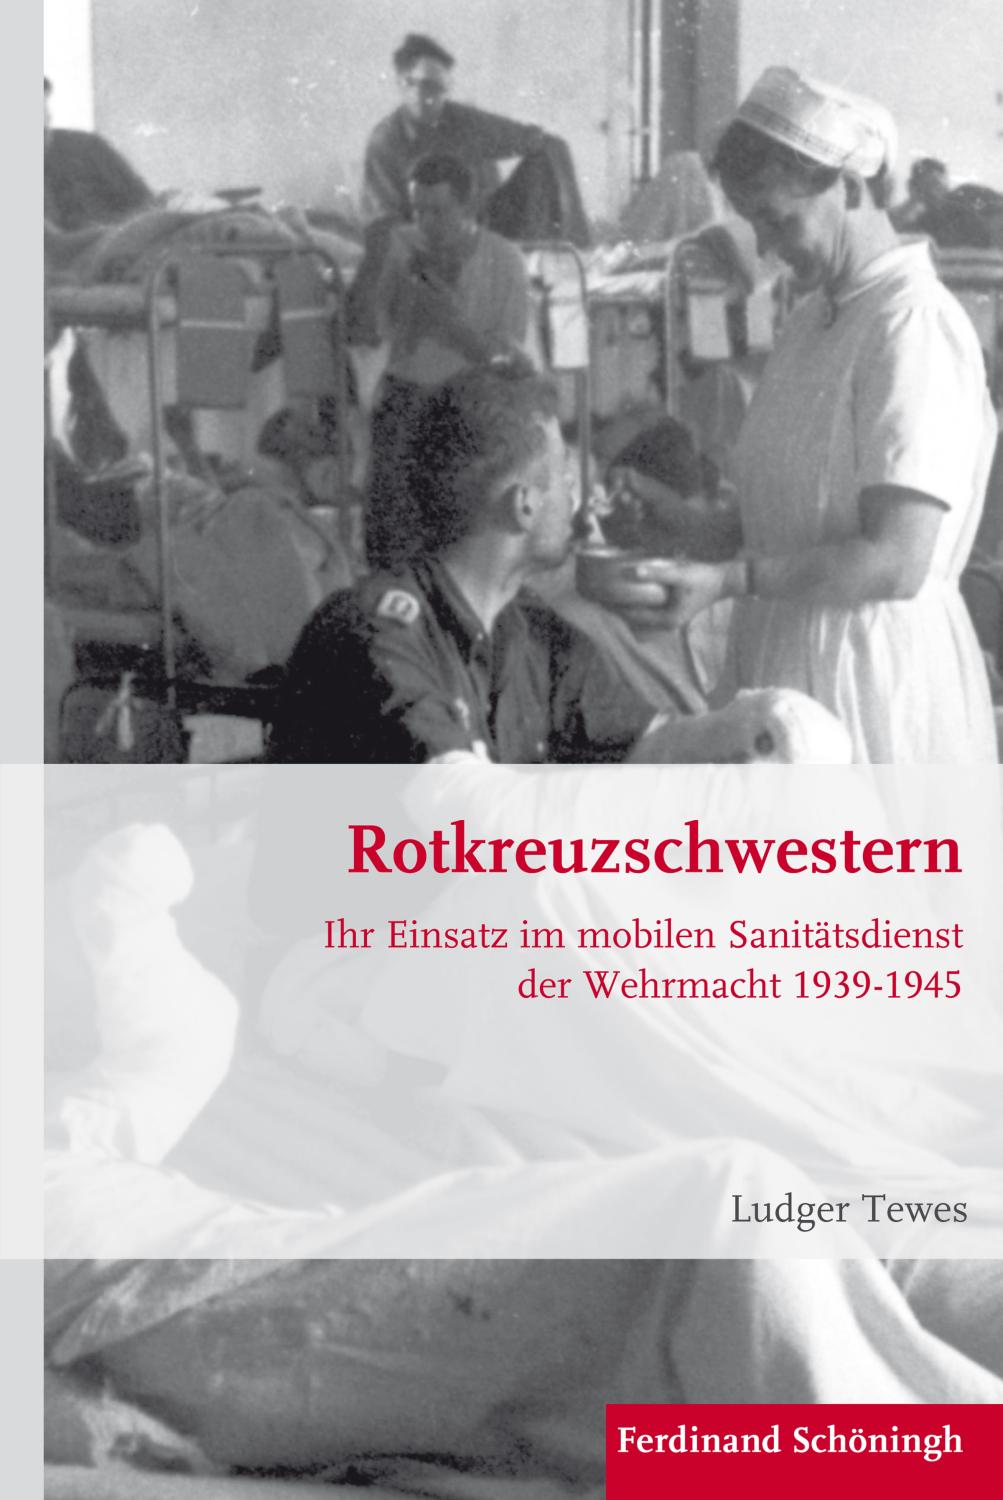 Rotkreuzschwestern: Ihr Einsatz im mobilen Sanitätsdienst der Wehrmacht 1939-1945 (Krieg in der Geschichte)